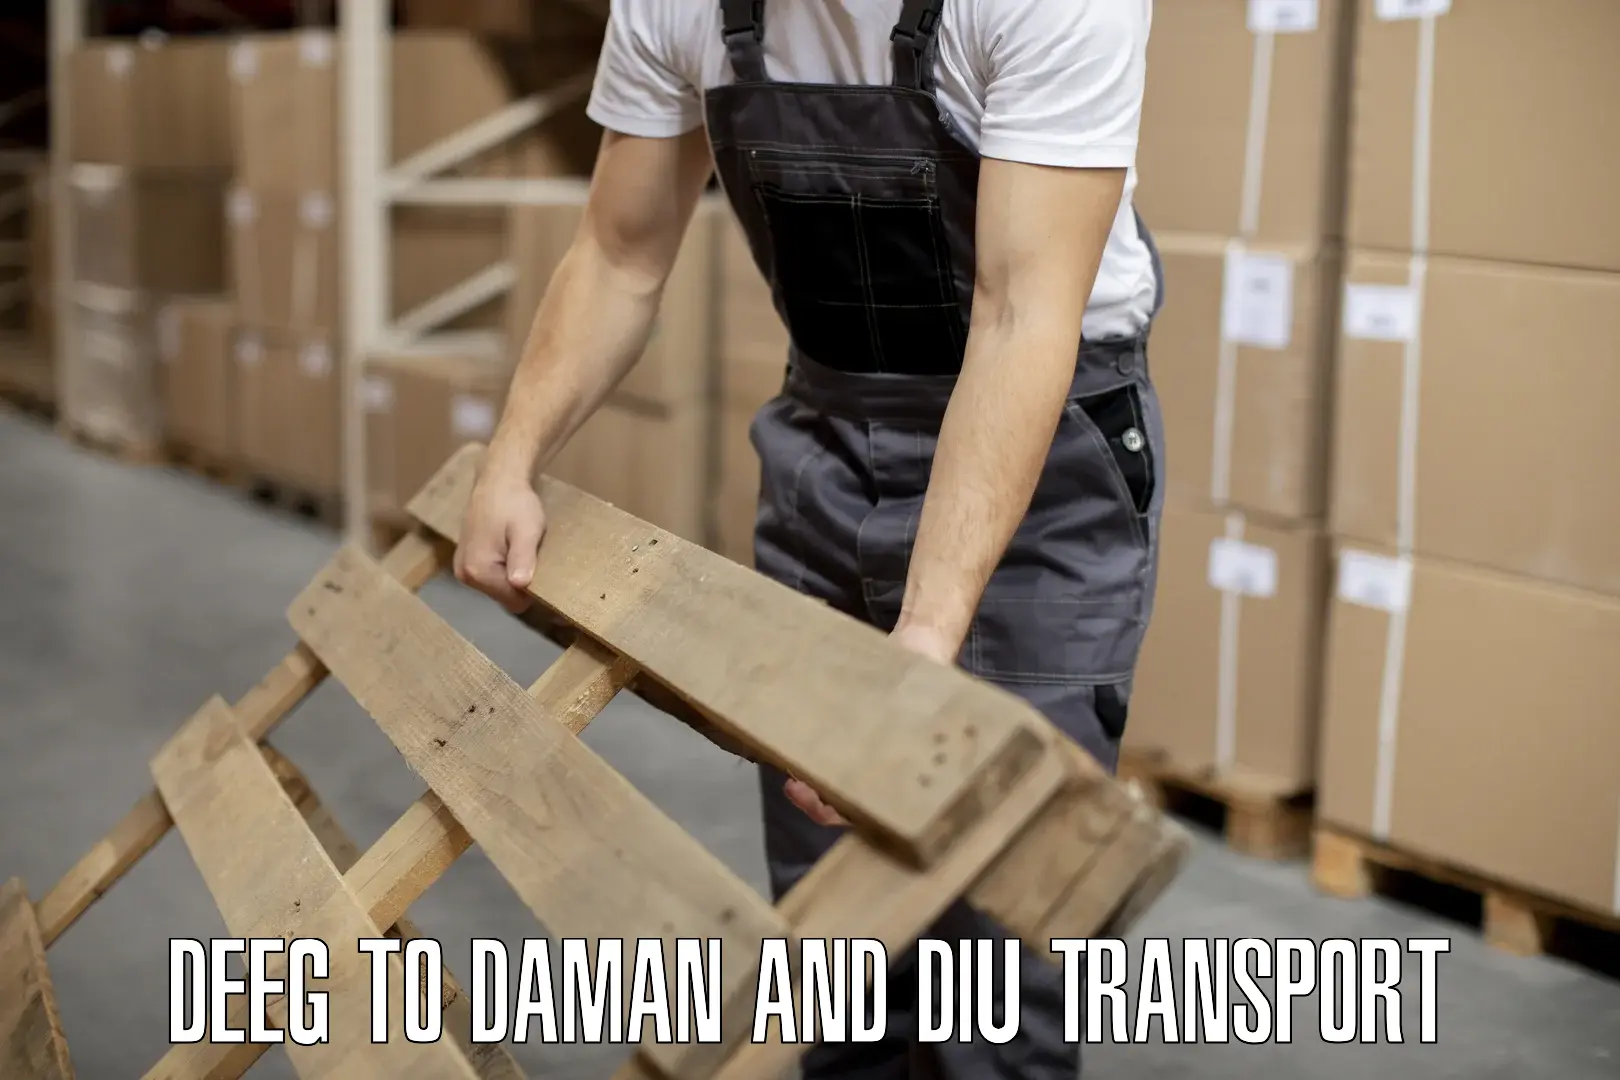 Bike transport service Deeg to Daman and Diu